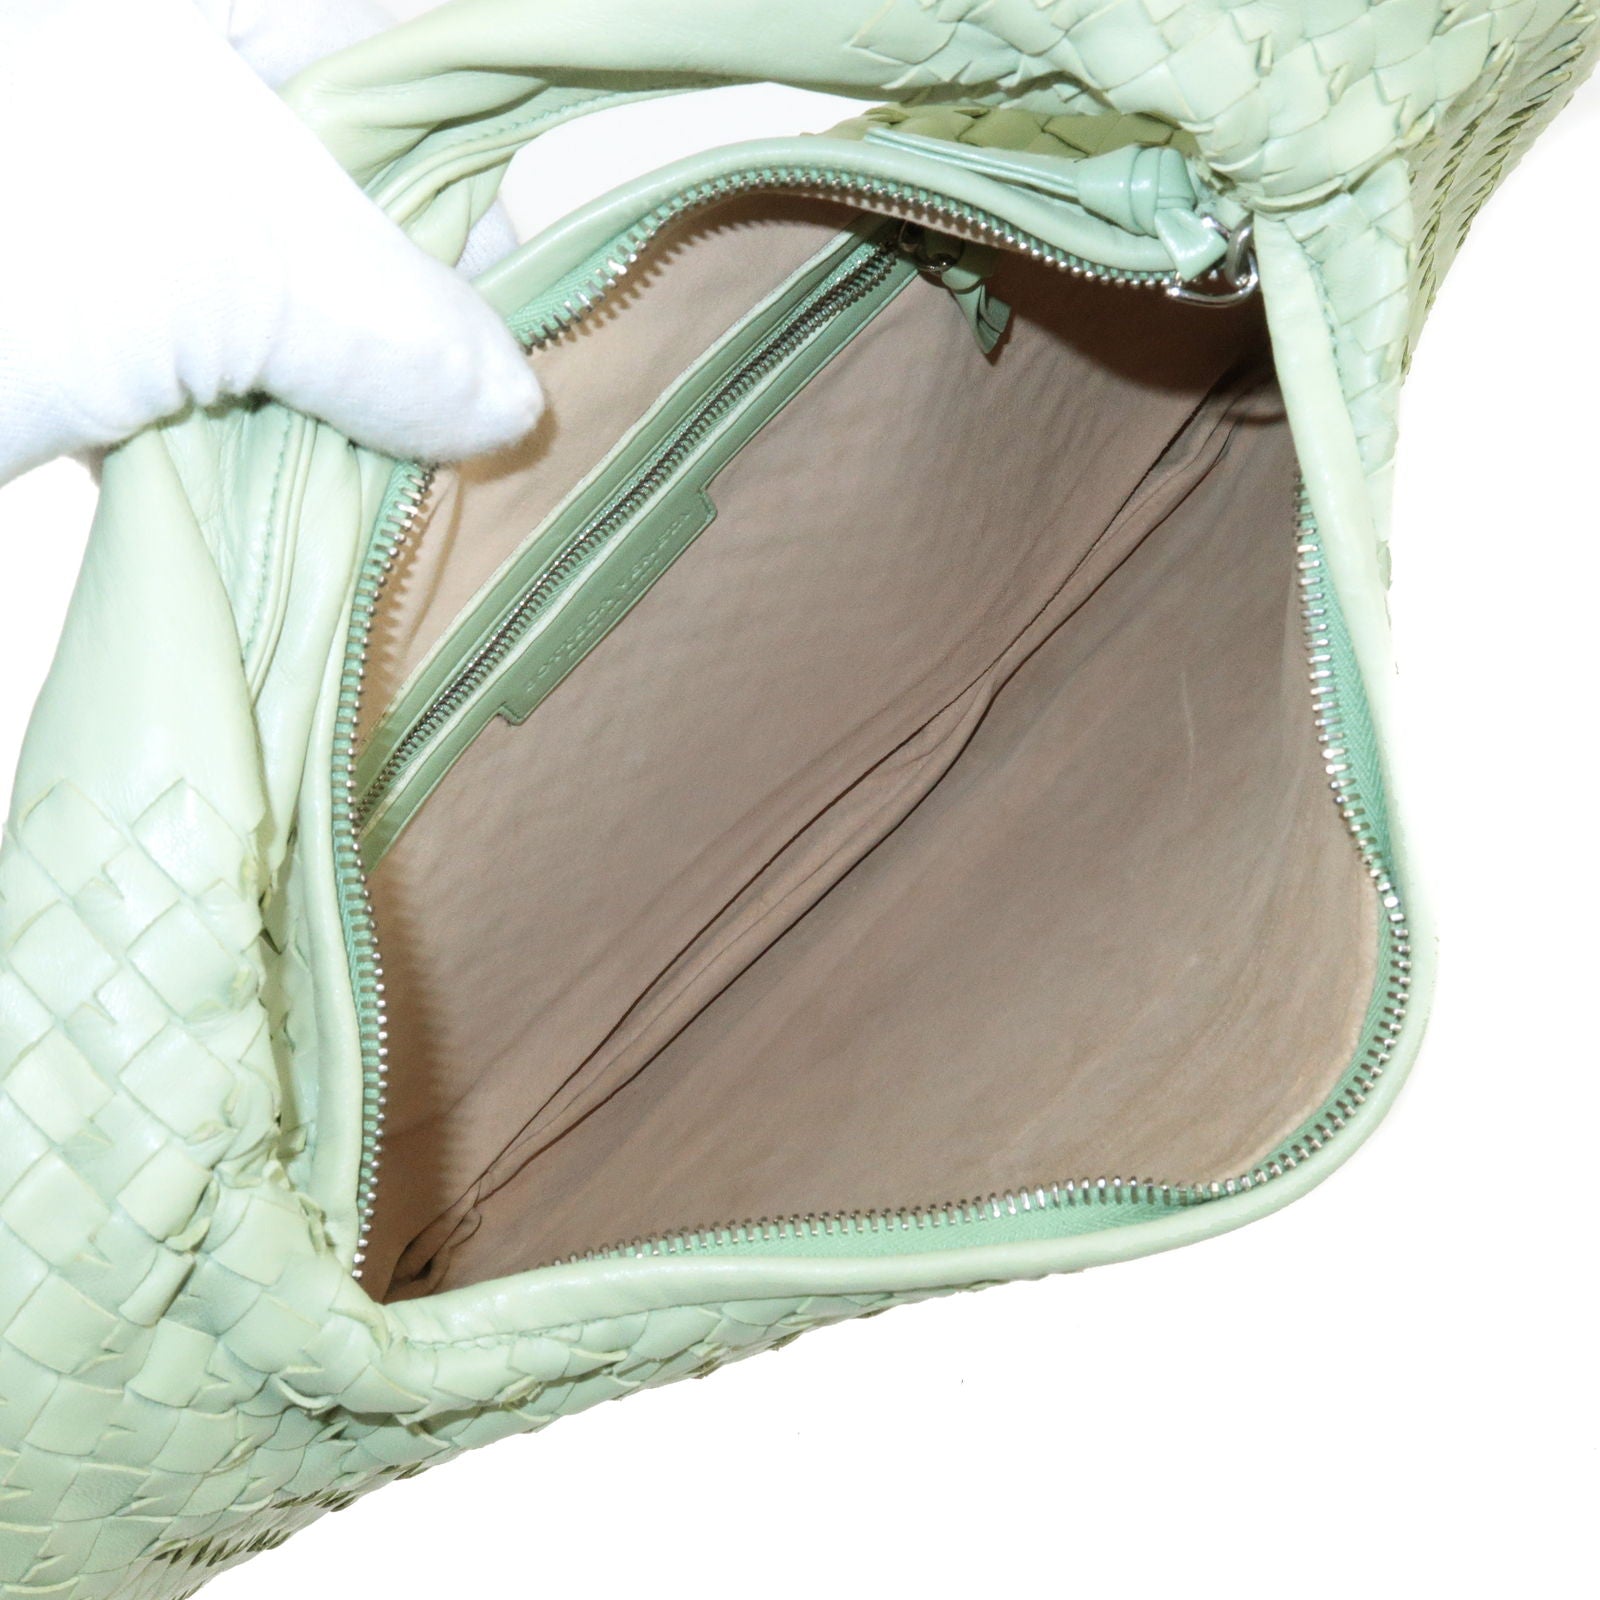 Bottega Veneta Intrecciato Green Leather Backpack 642361-V05J1